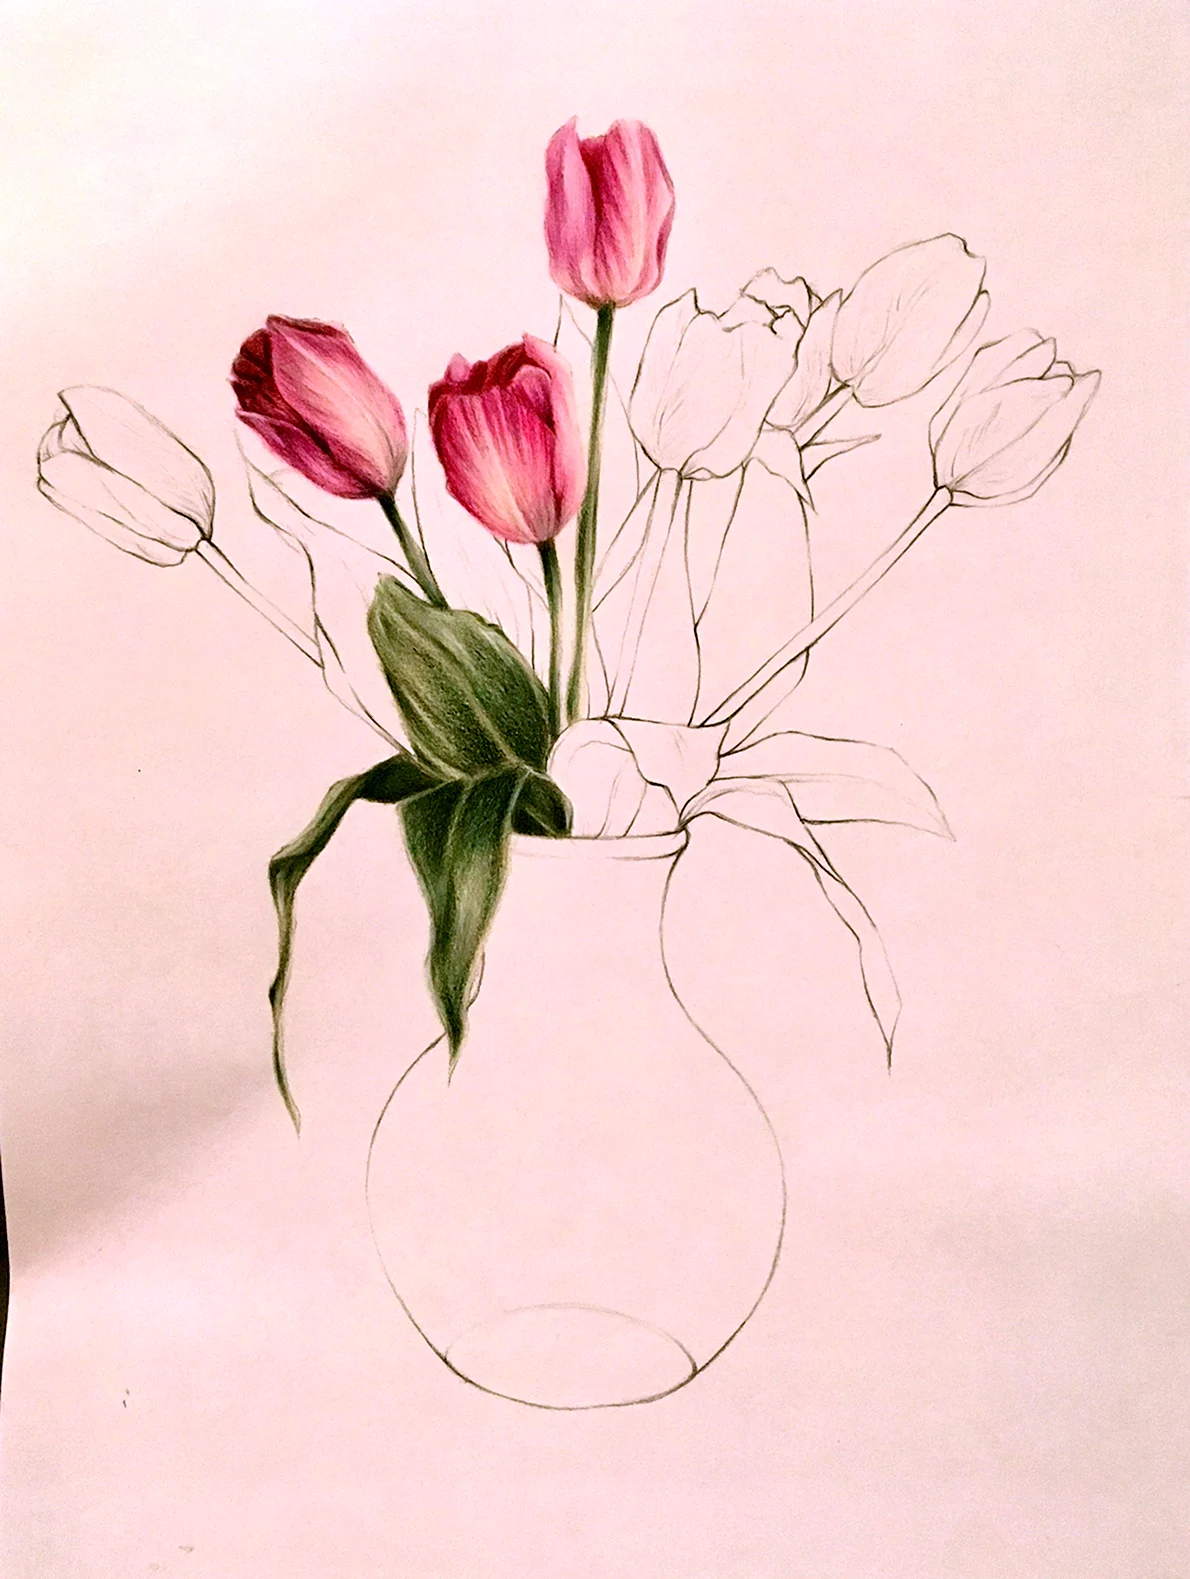 Ваза с тюльпанами рисунок. Ваза с цветами рисунок карандашом. Тюльпаны в вазе карандашом. Цветы рисунок карандашом в вазе тюльпаны. Рисунки цветов в вазе для срисовки.